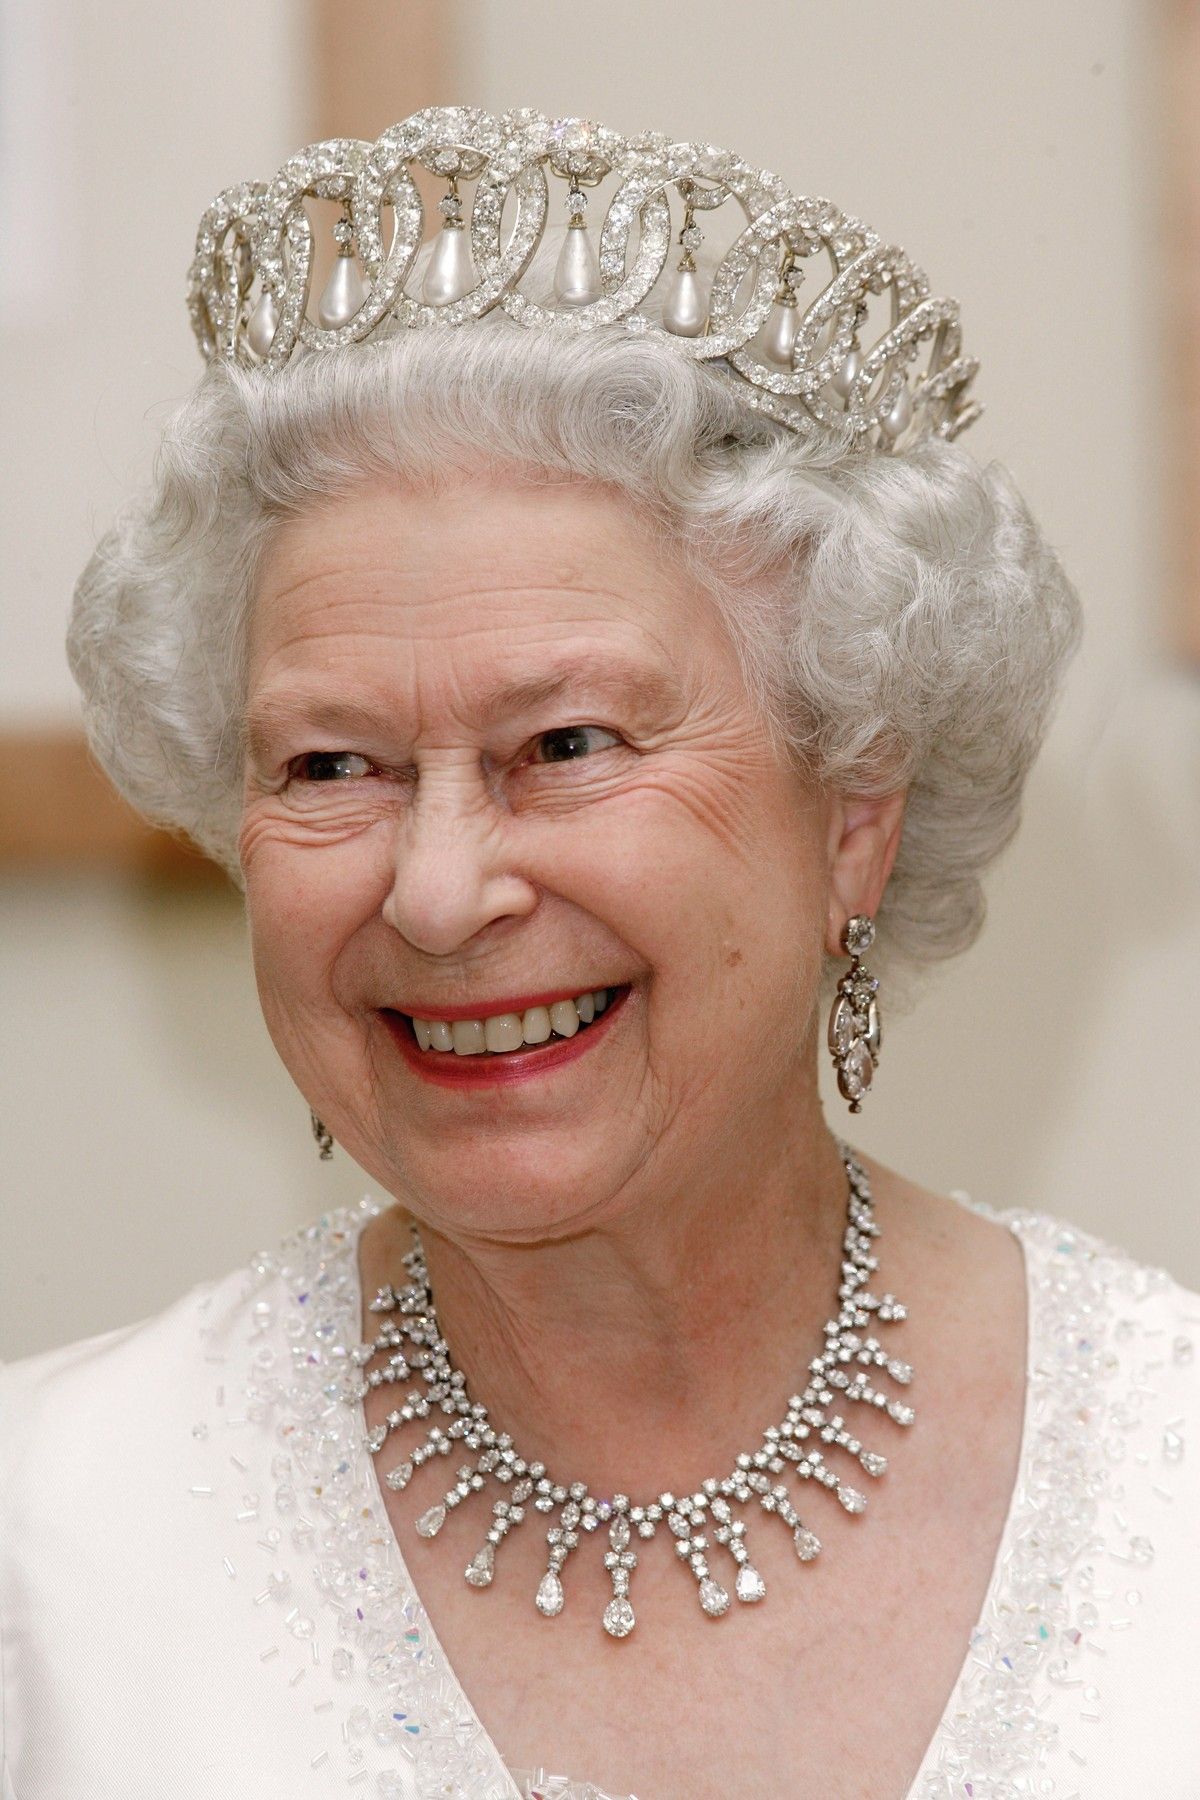 Queen of great britain